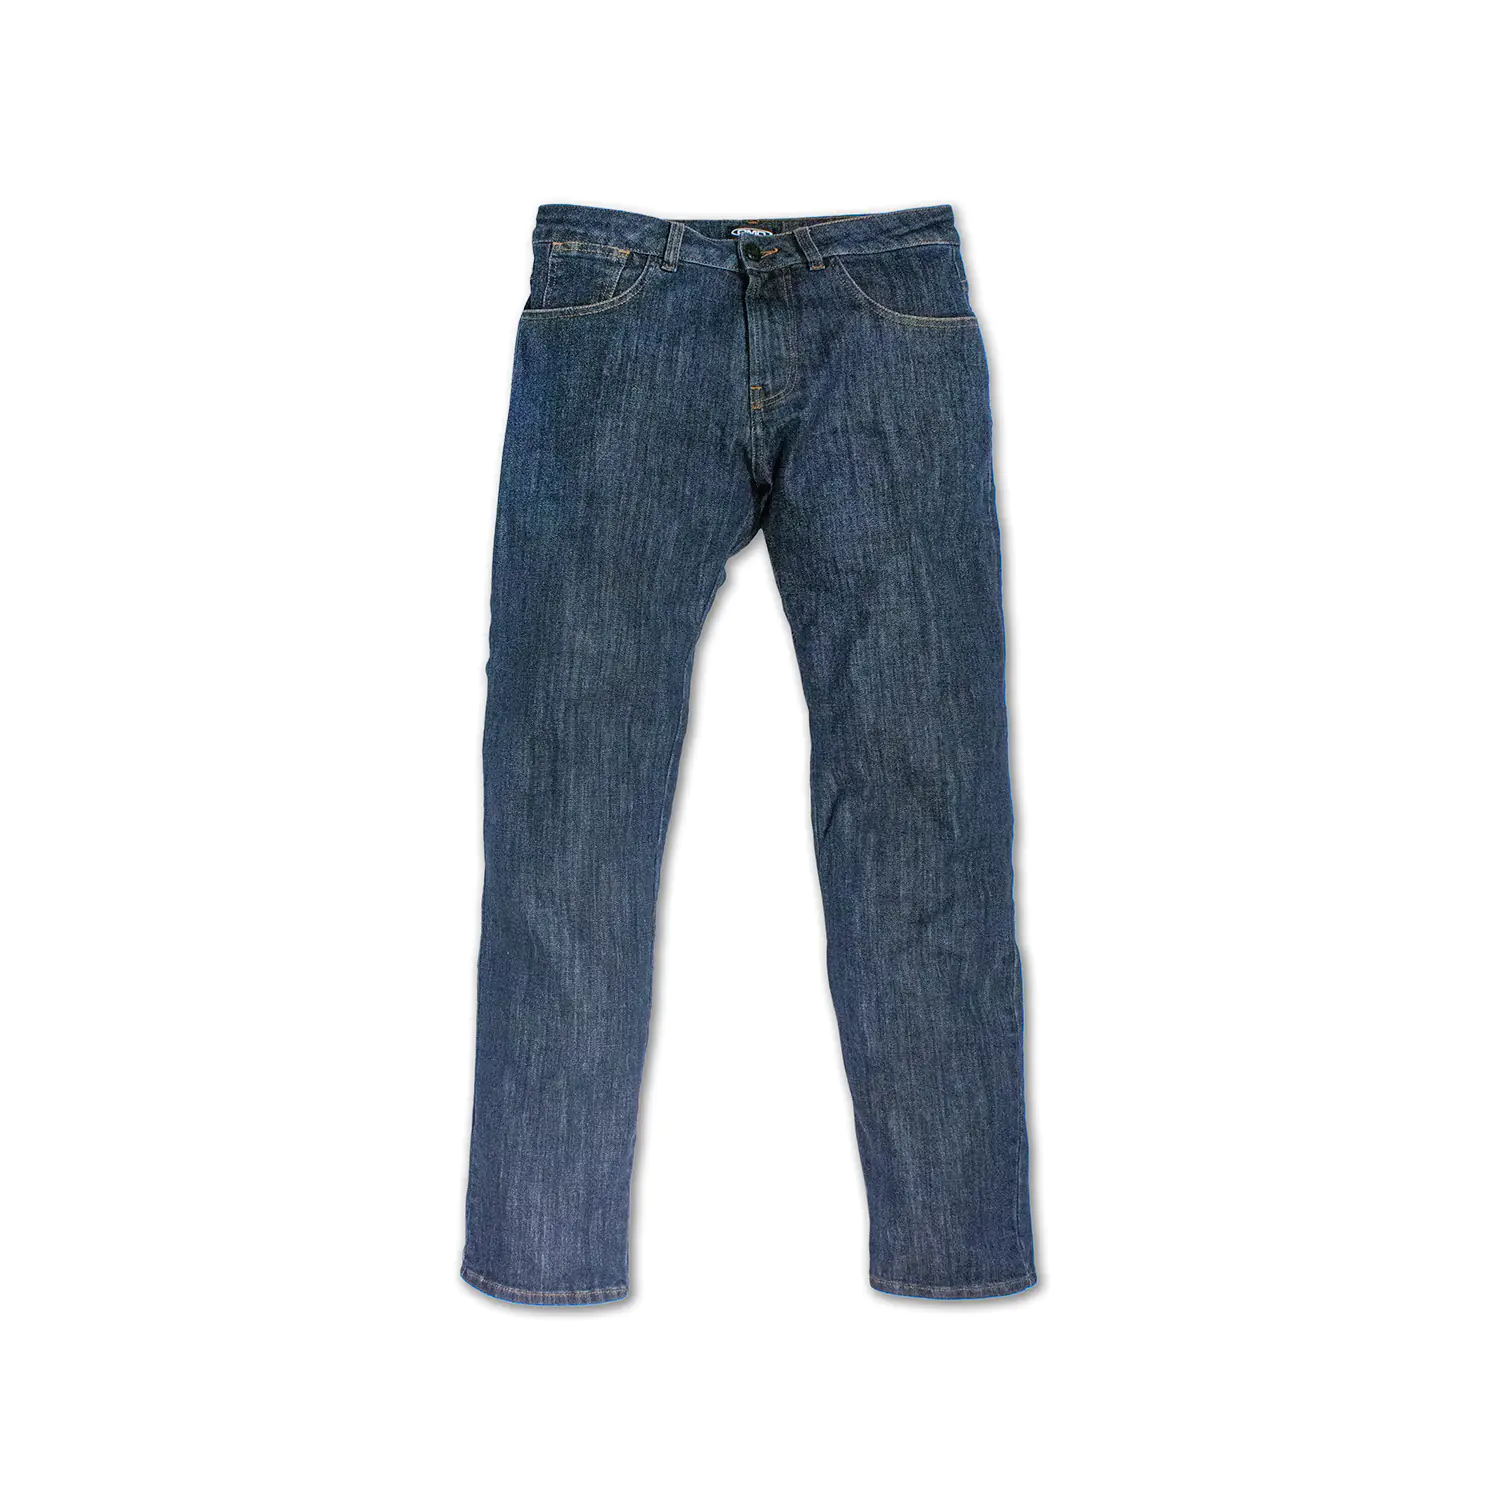 dmd.eu - JEANS DMD – Pants Jeans – front